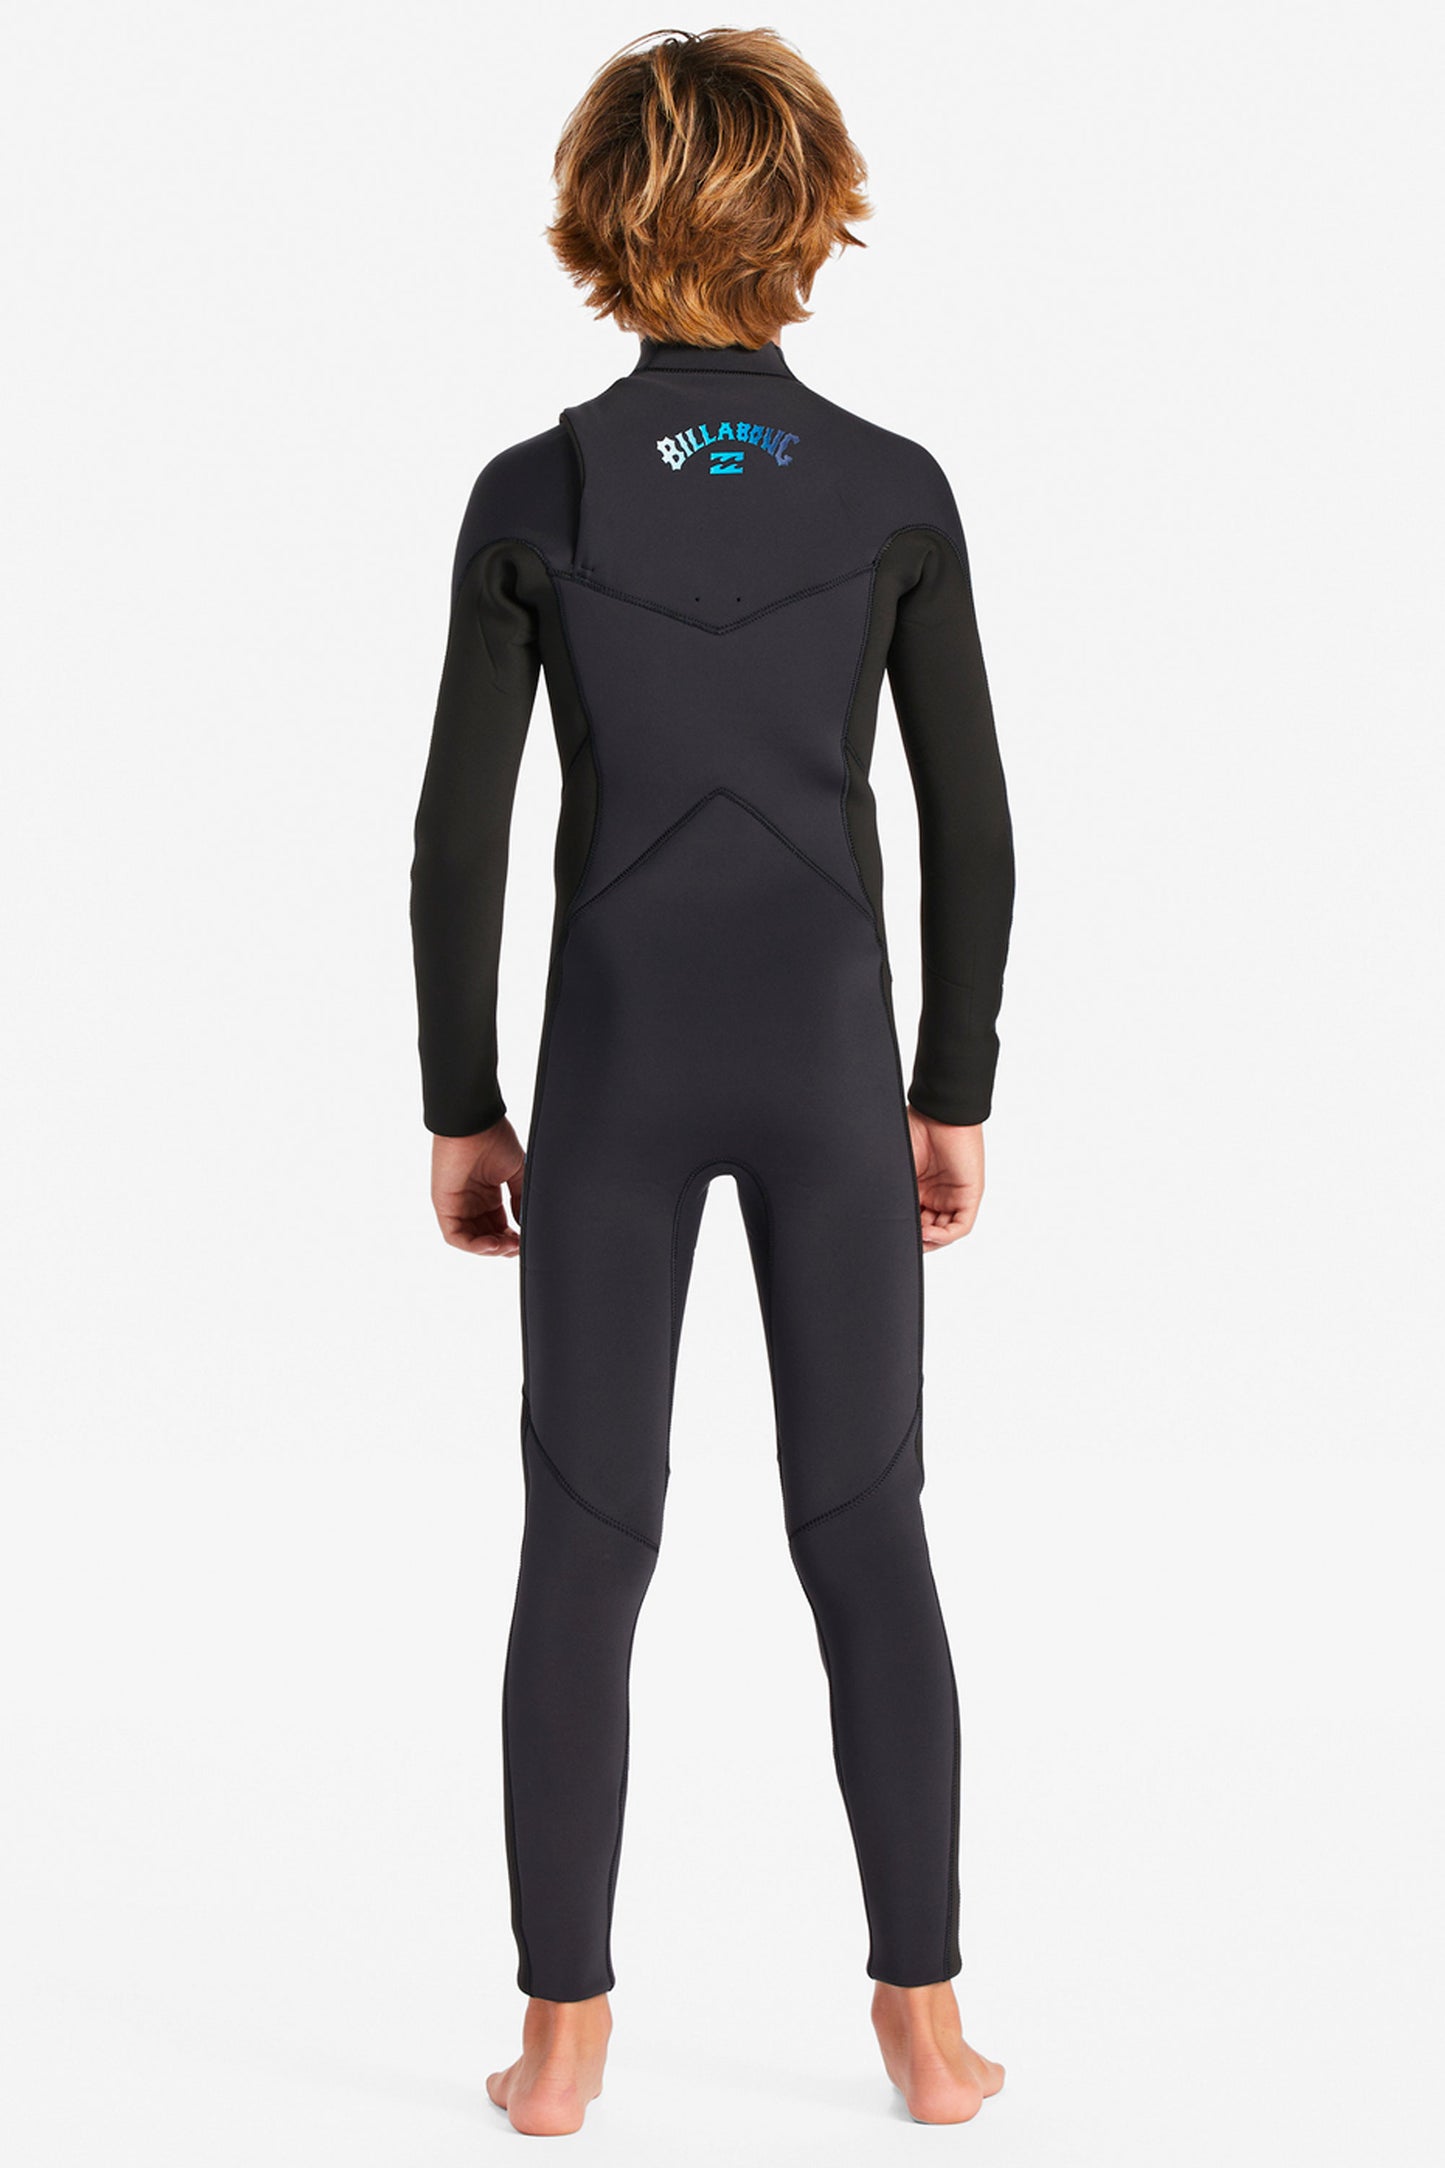 Pukas-Surf-Shop-Billabong-Wetsuit-Absolute-5-4mm-chest-zip-blue-fade